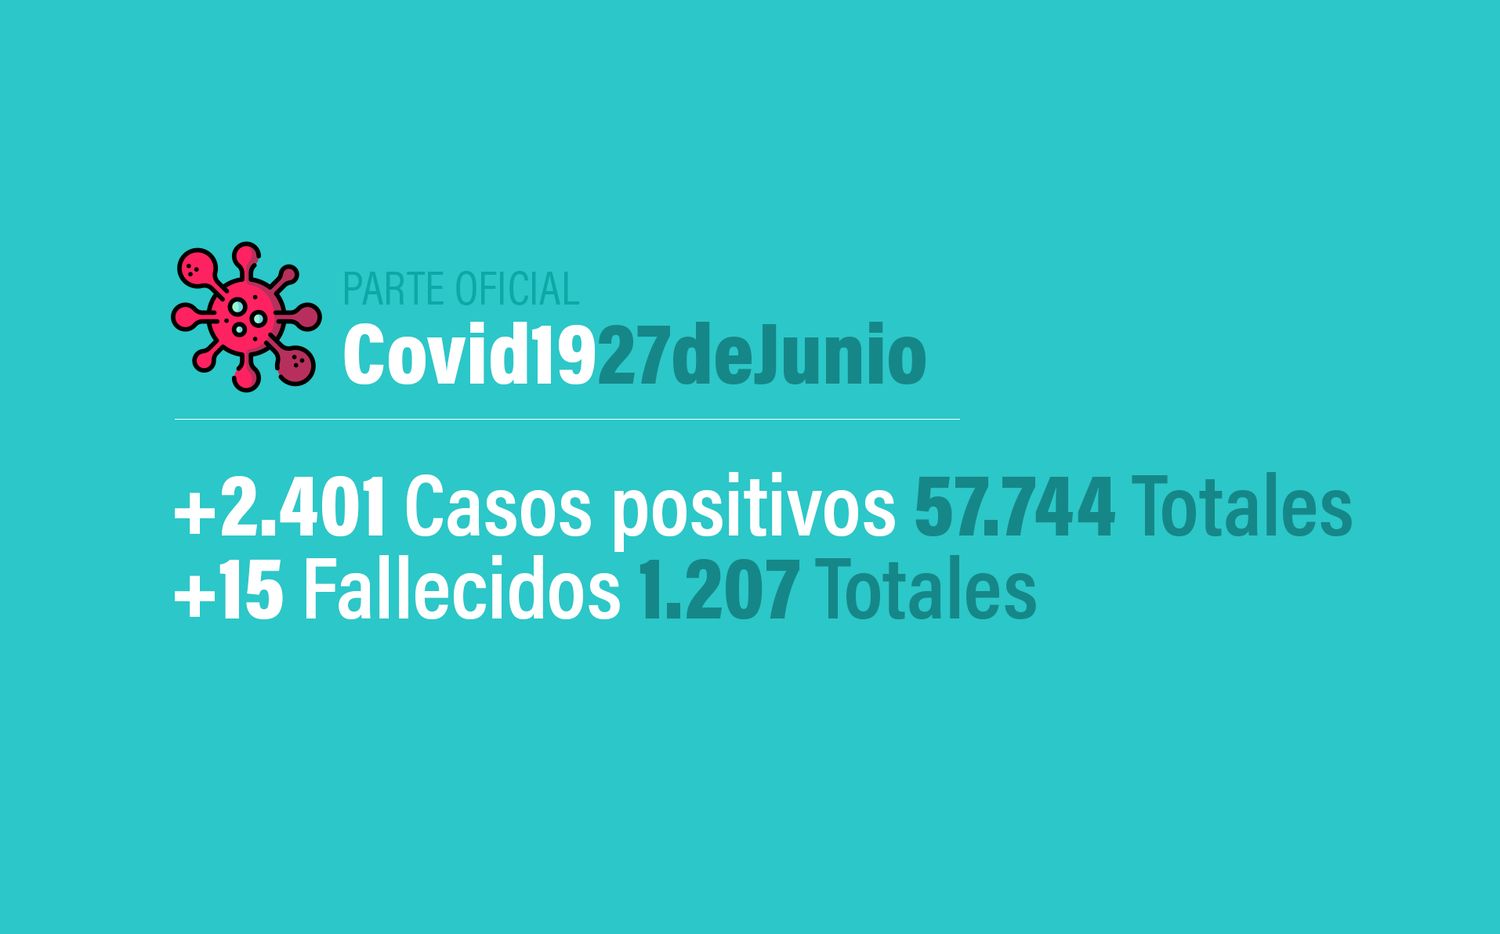 Coronavirus en Argentina: 2401 nuevos casos, 57744 confirmados, 19143 recuperados y 1207 muertes, al 27 de junio